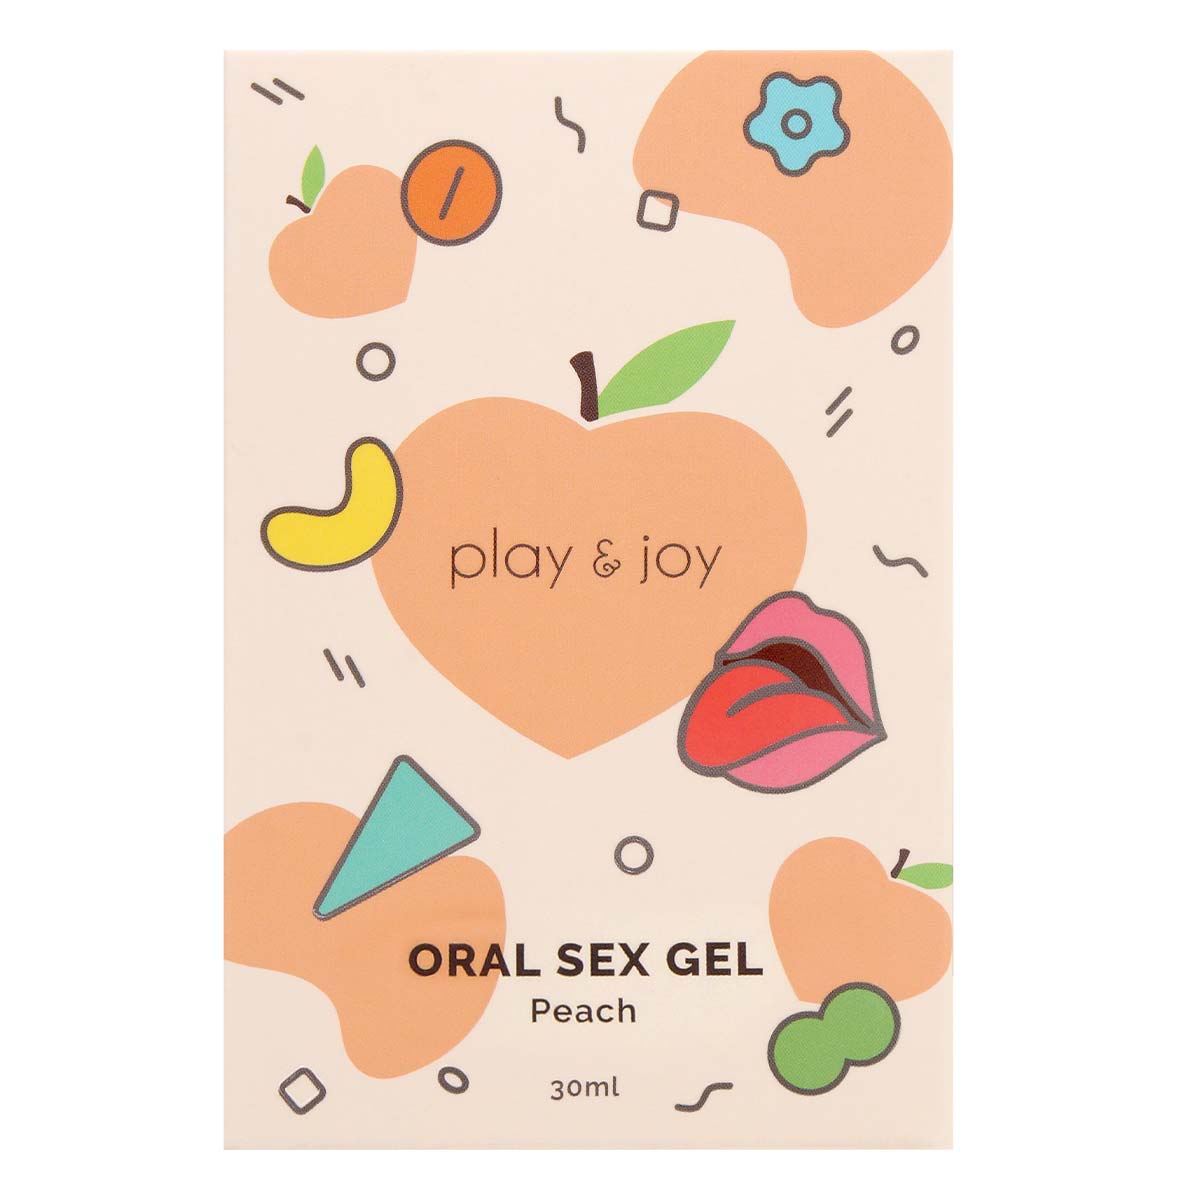 PLAY & JOY ORAL SEX GEL 30ml (Peach Flavour)-p_2